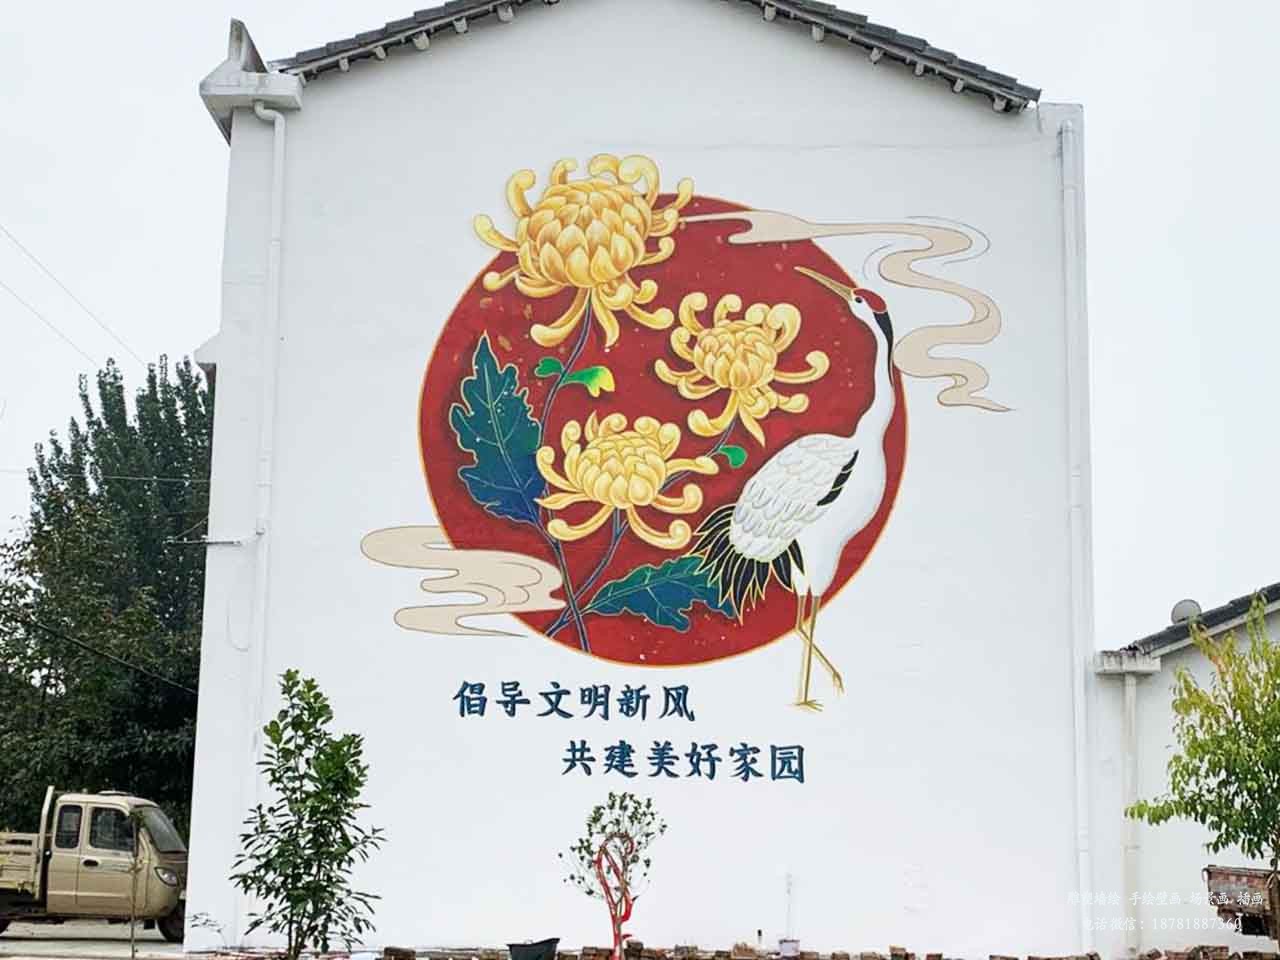 振新美丽乡村仙鹤菊花壁画墙绘彩绘涂鸦成都澜泉文化